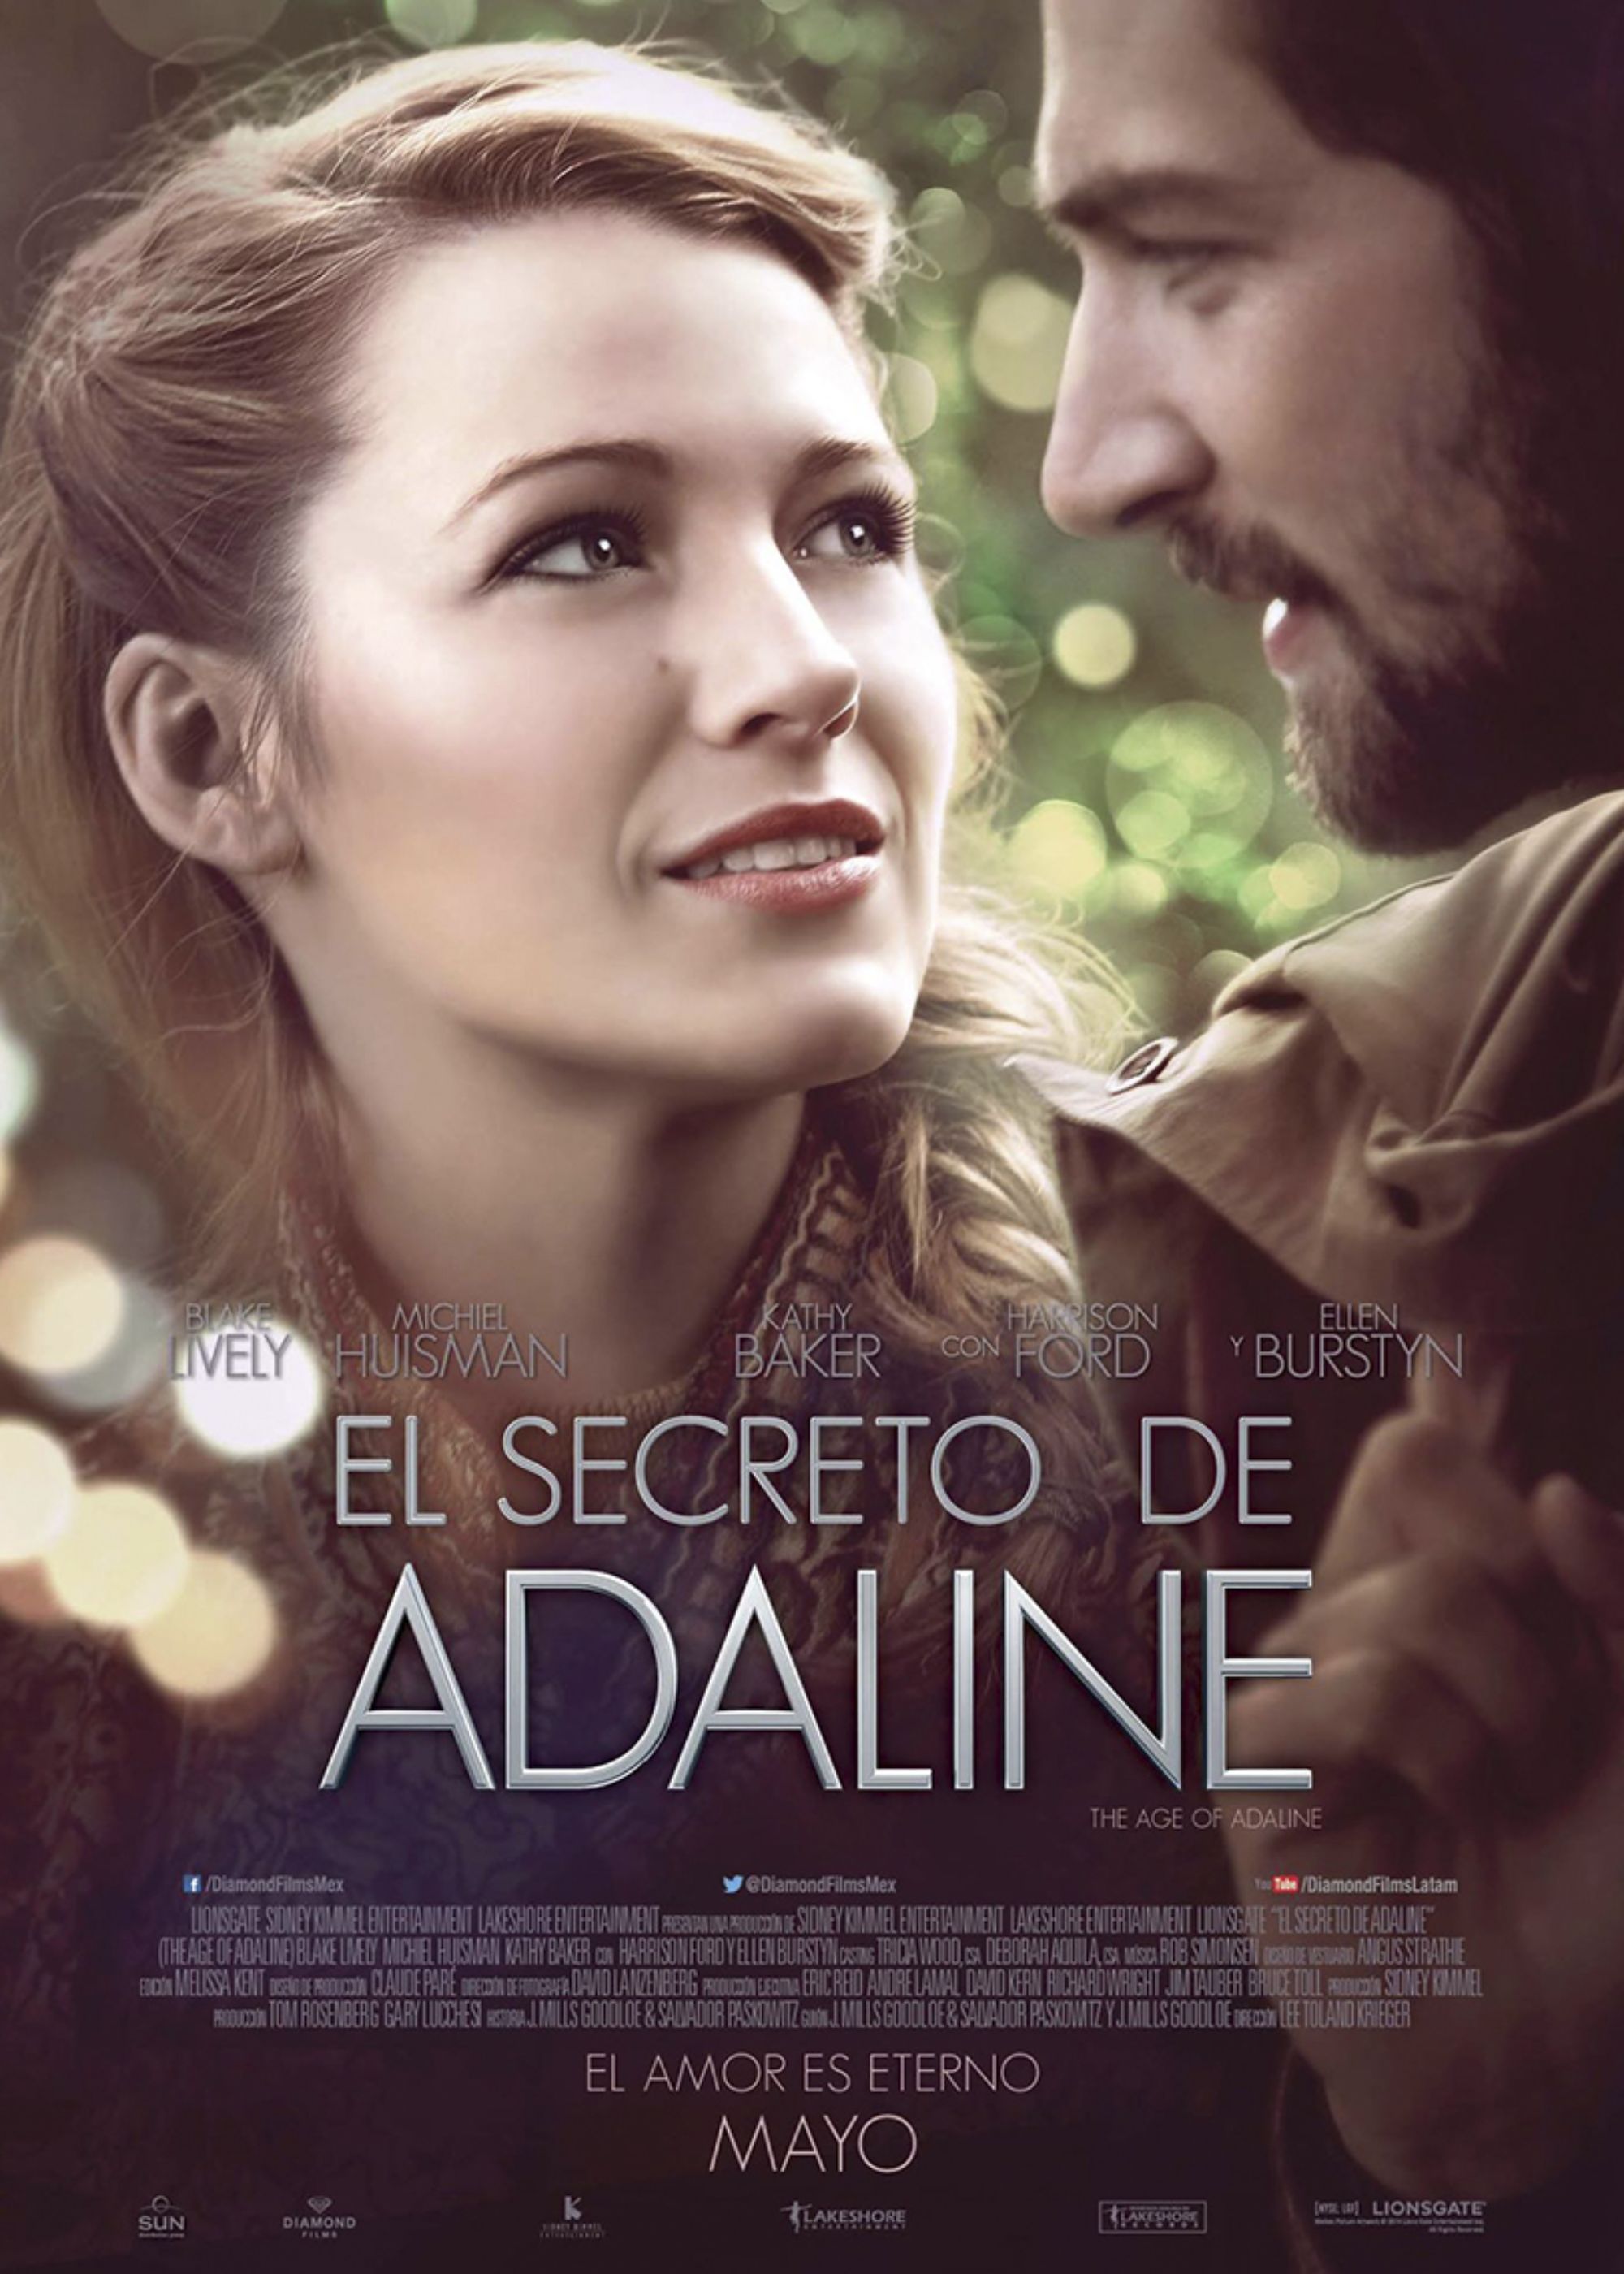 El secreto de Adaline - Películas - Comprar/Alquilar - Rakuten TV